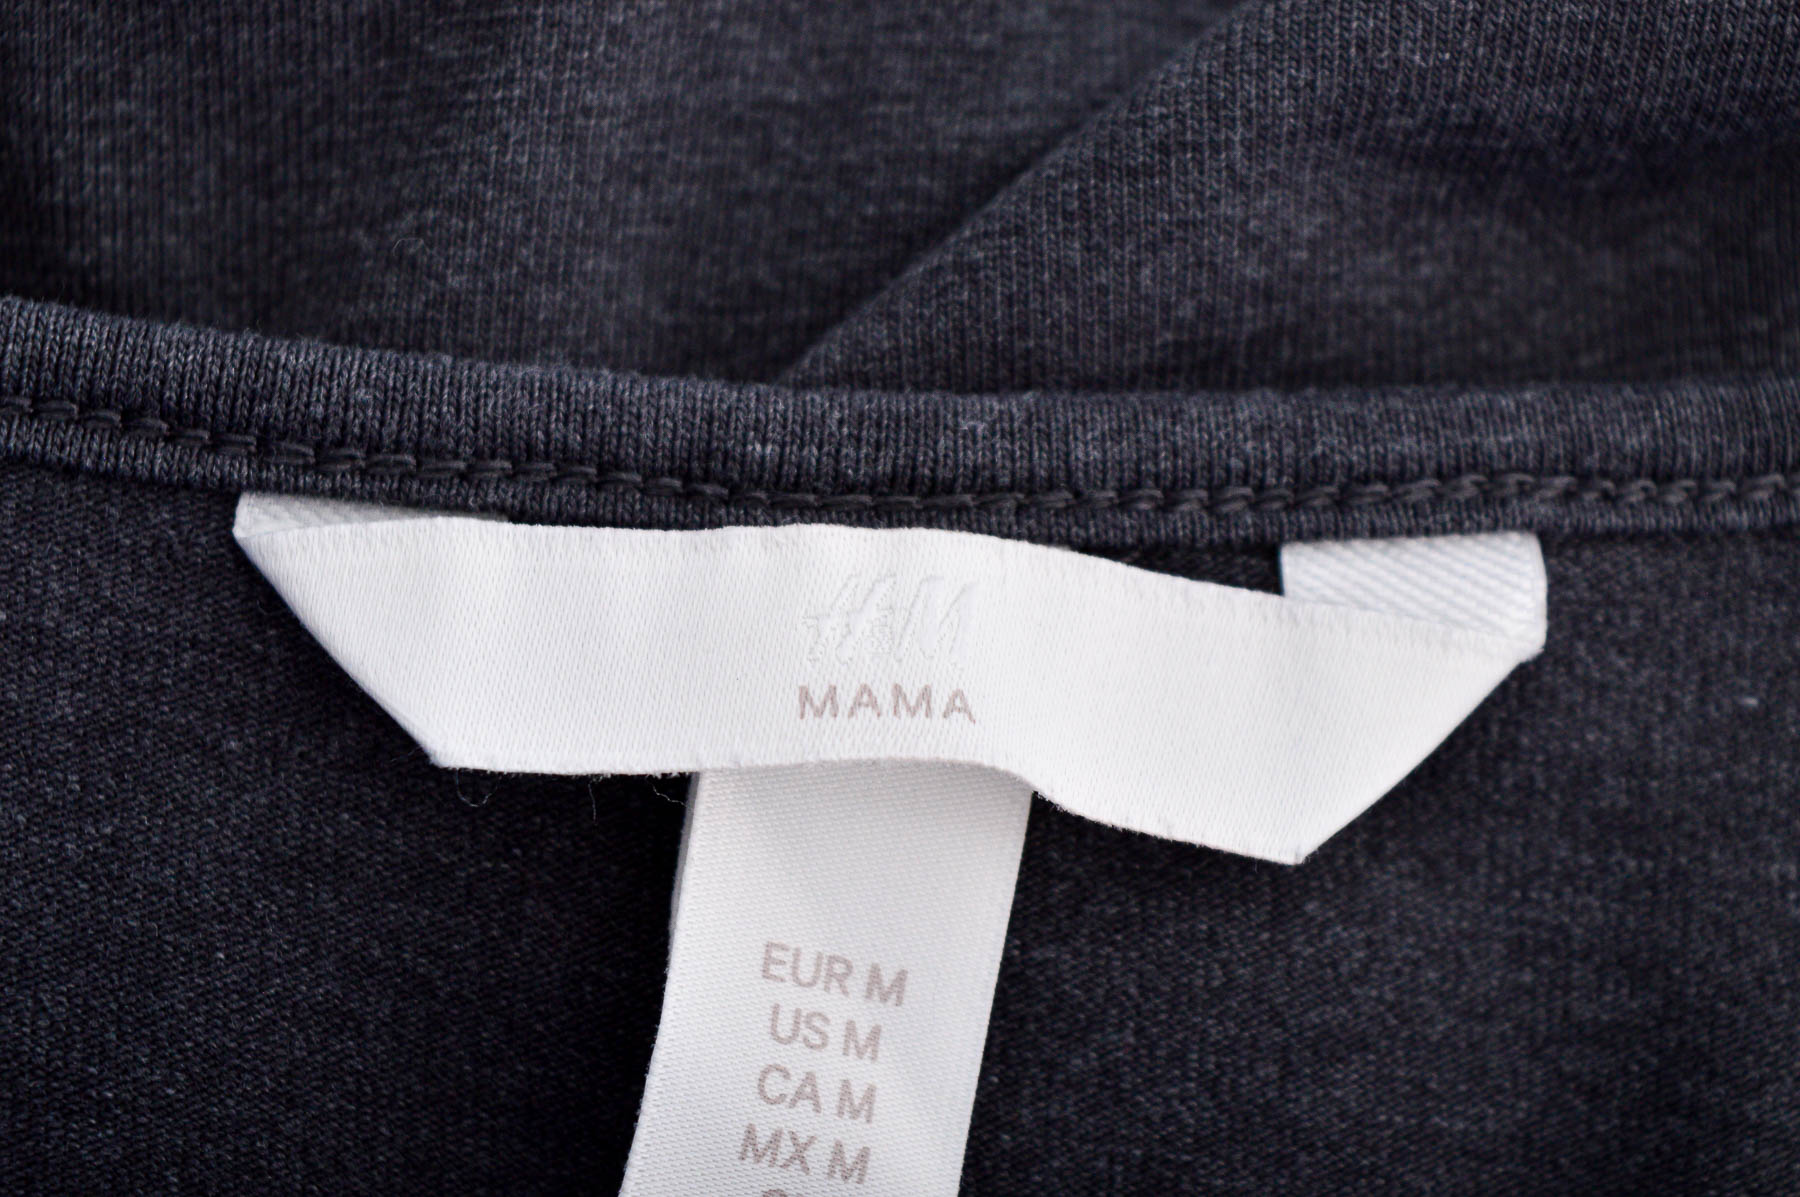 Γυναικεία μπλούζαγια έγκυες - H&M MAMA - 2